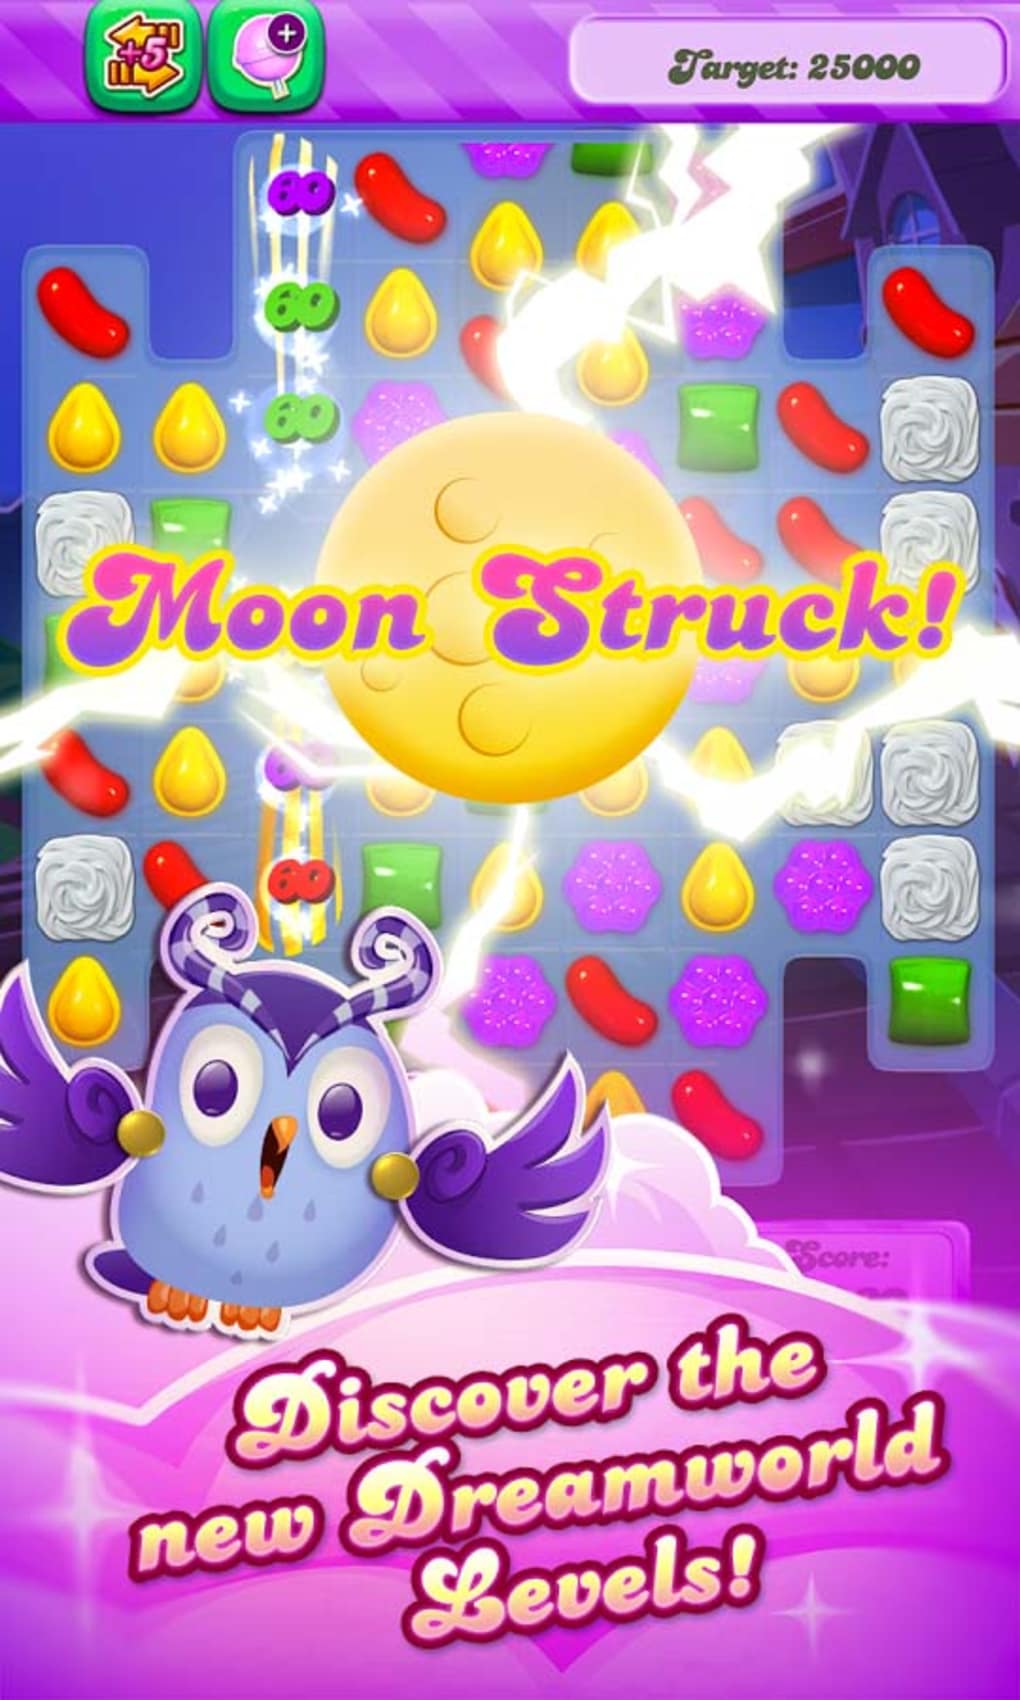 Play Candy Crush Saga Game Online Free